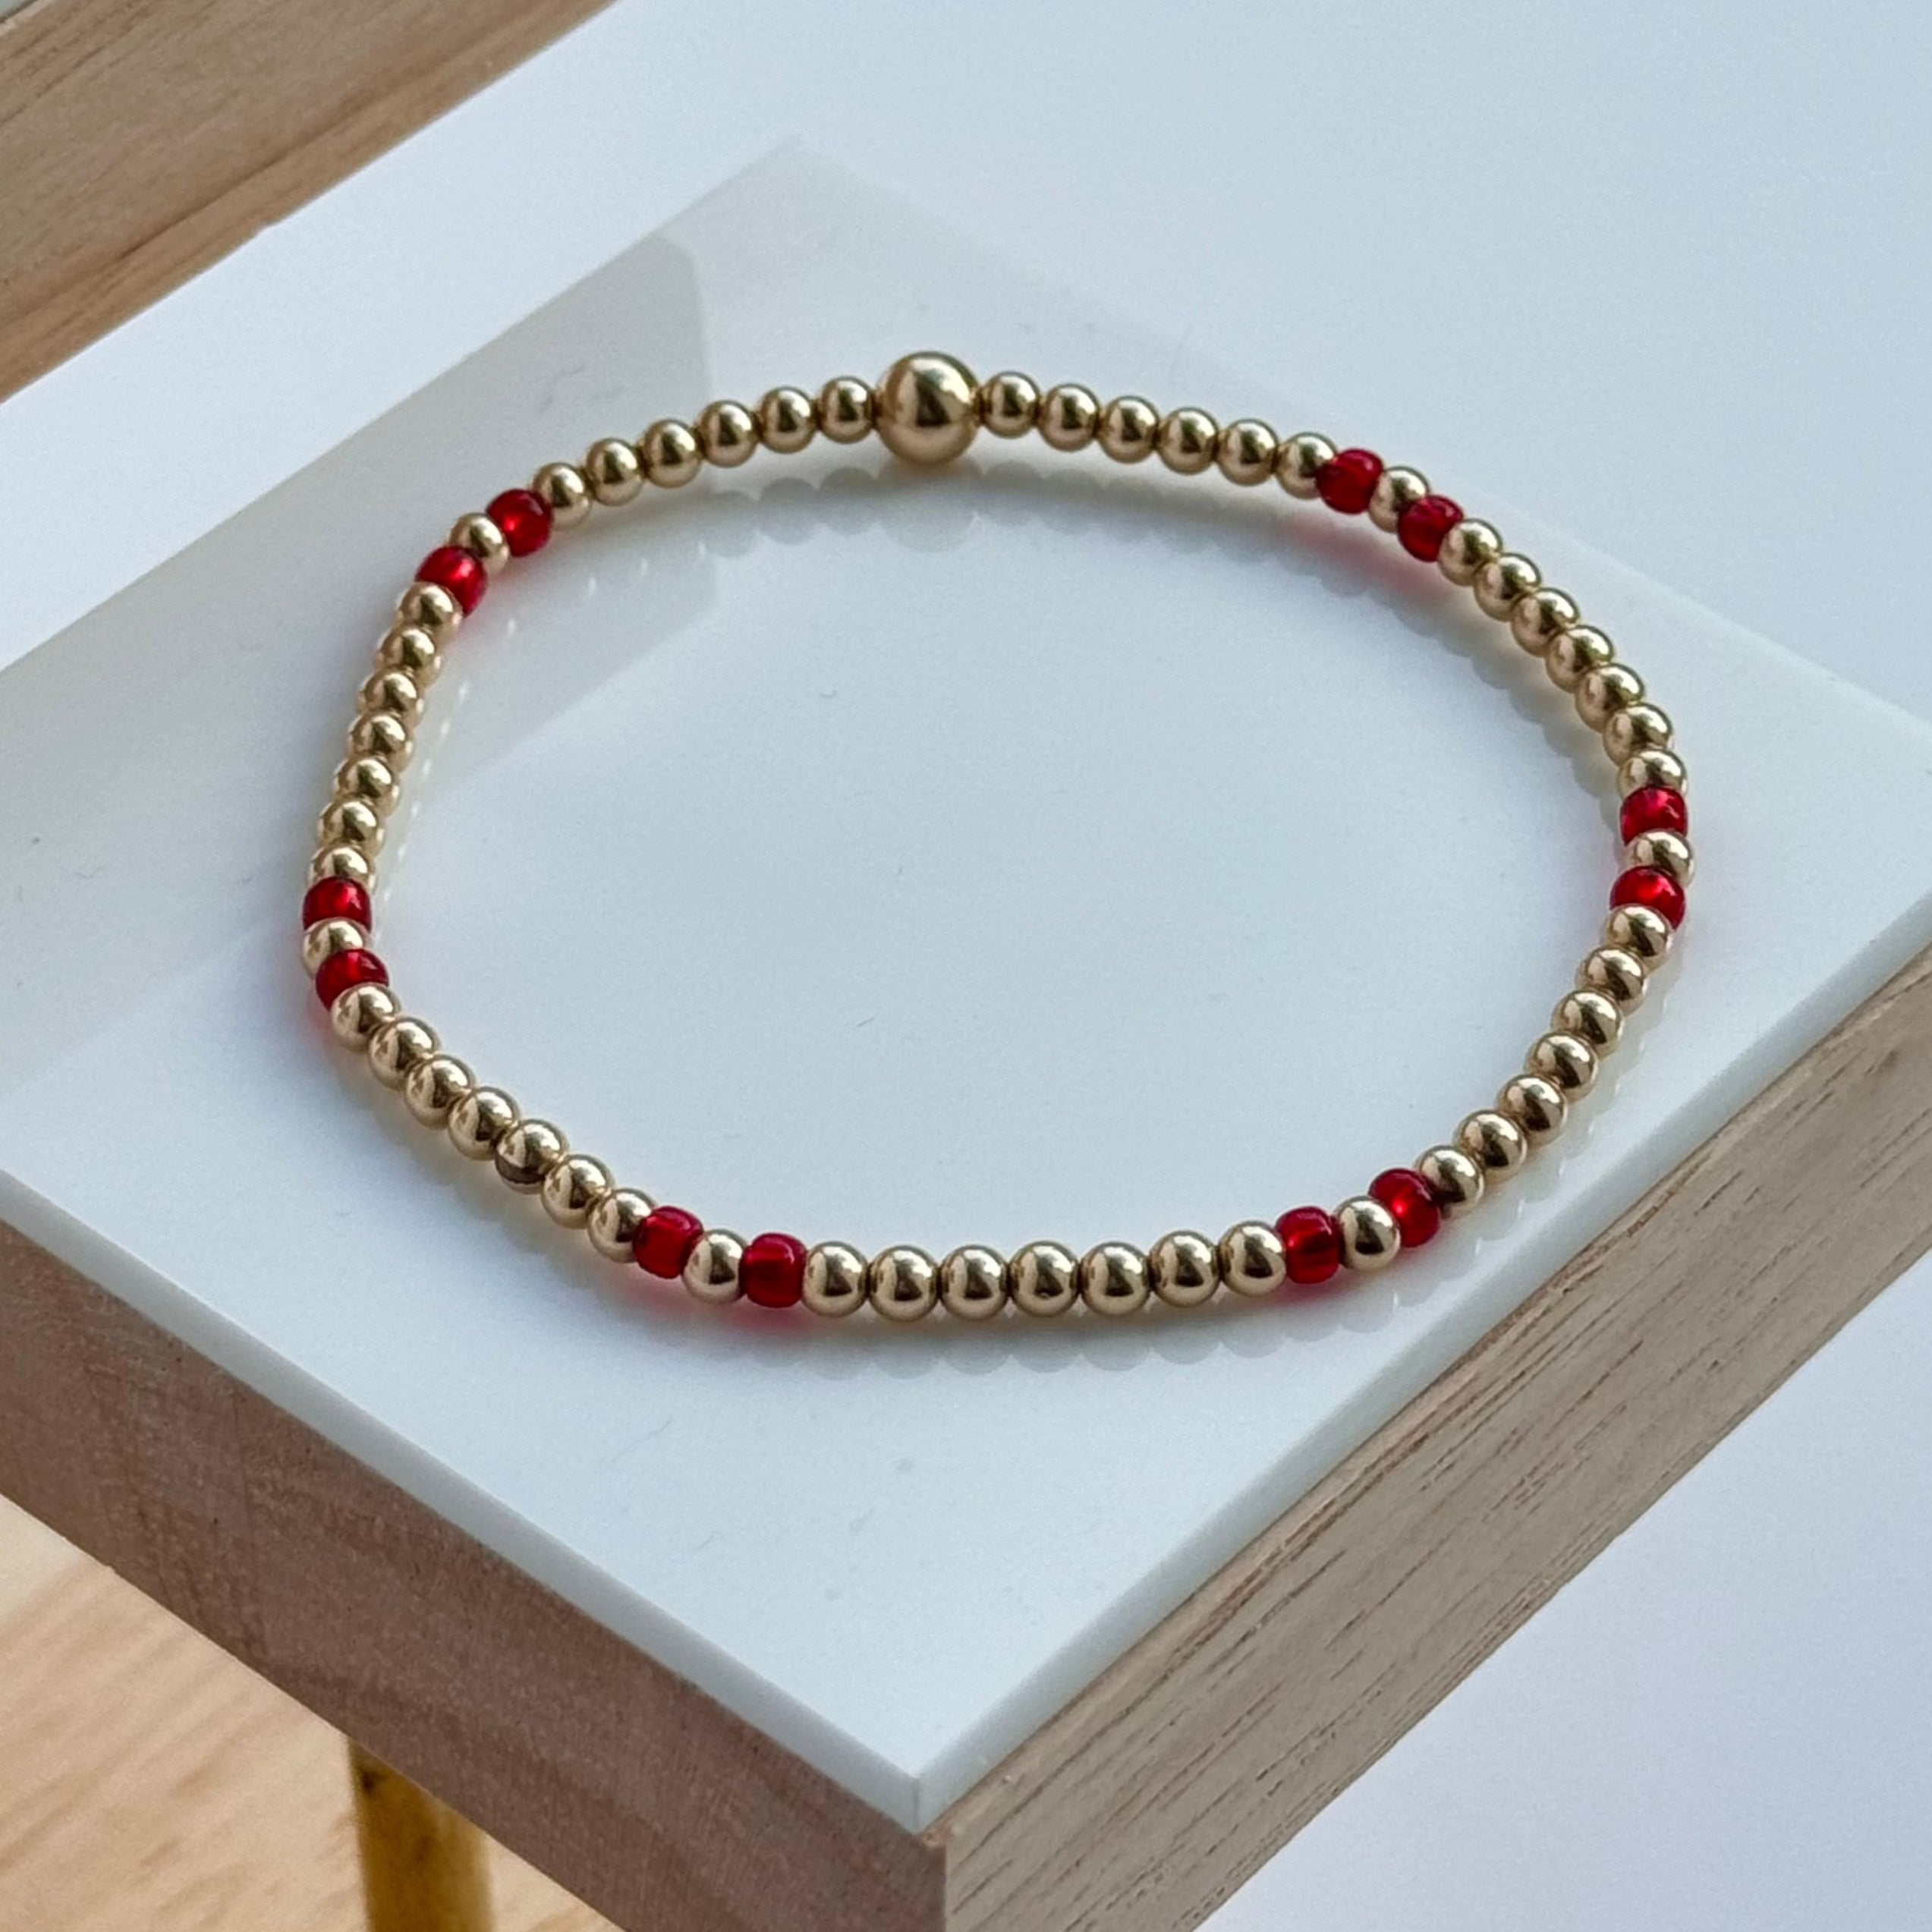 The Rachel bracelet - red beads